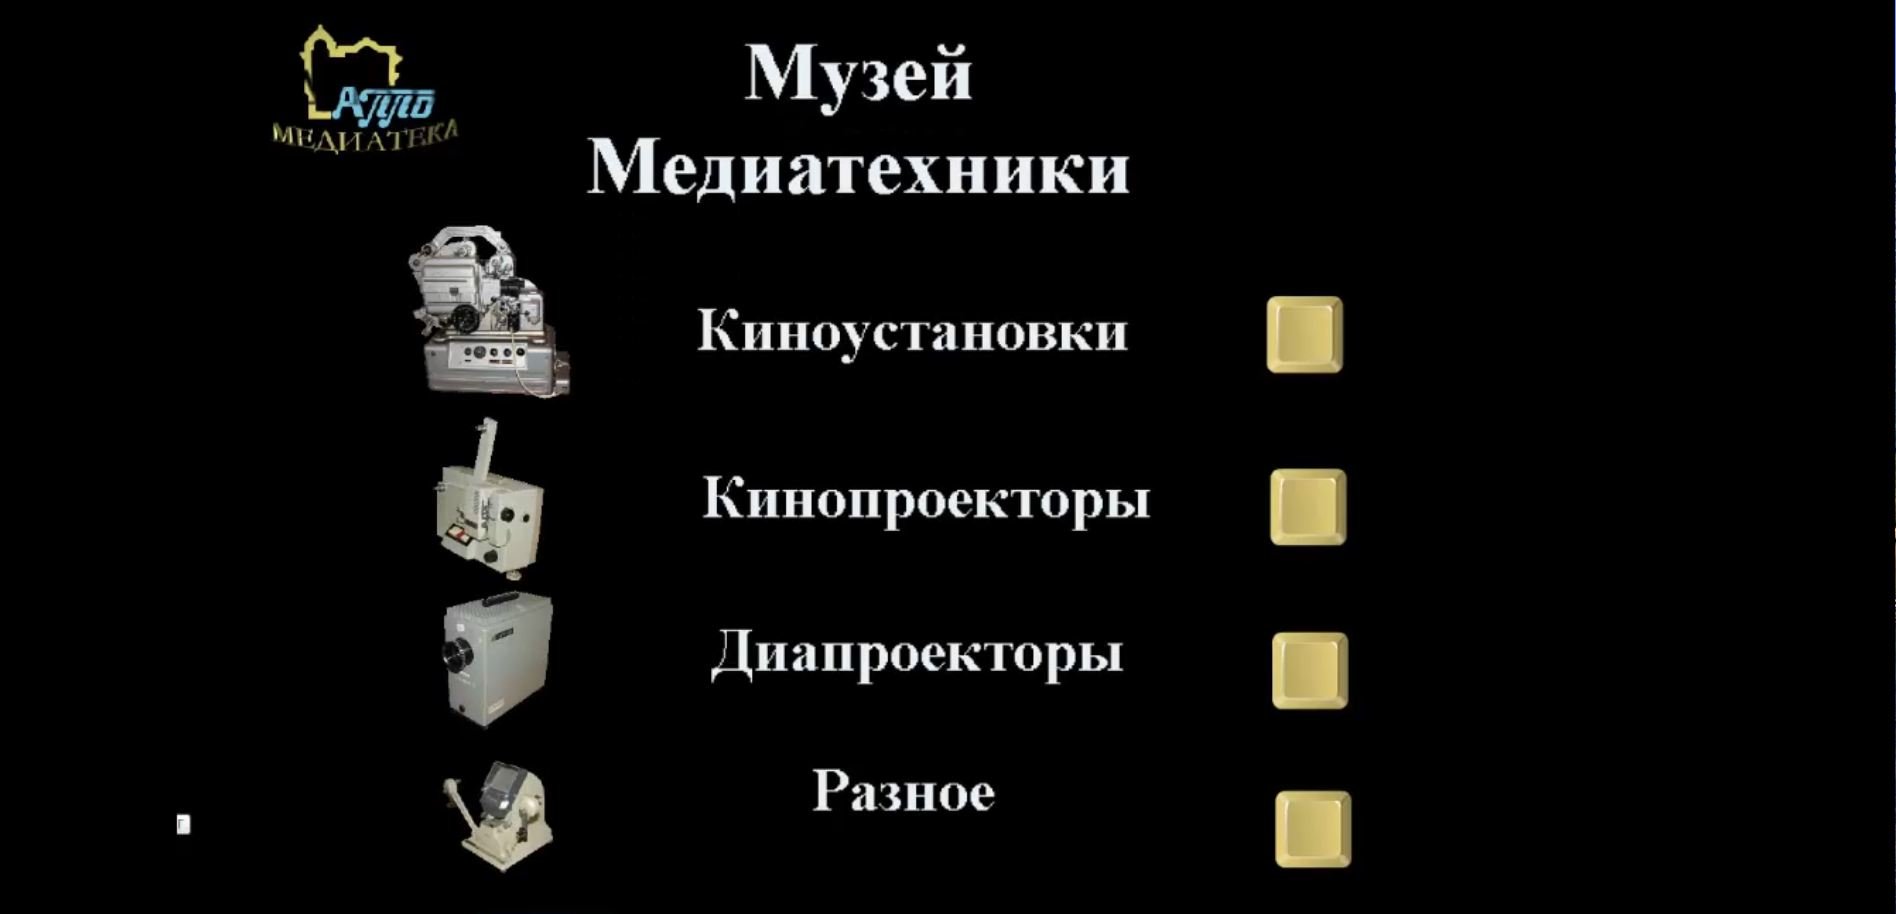 Коллекция советских киноустановок, кинопроекторов, диапроекторов